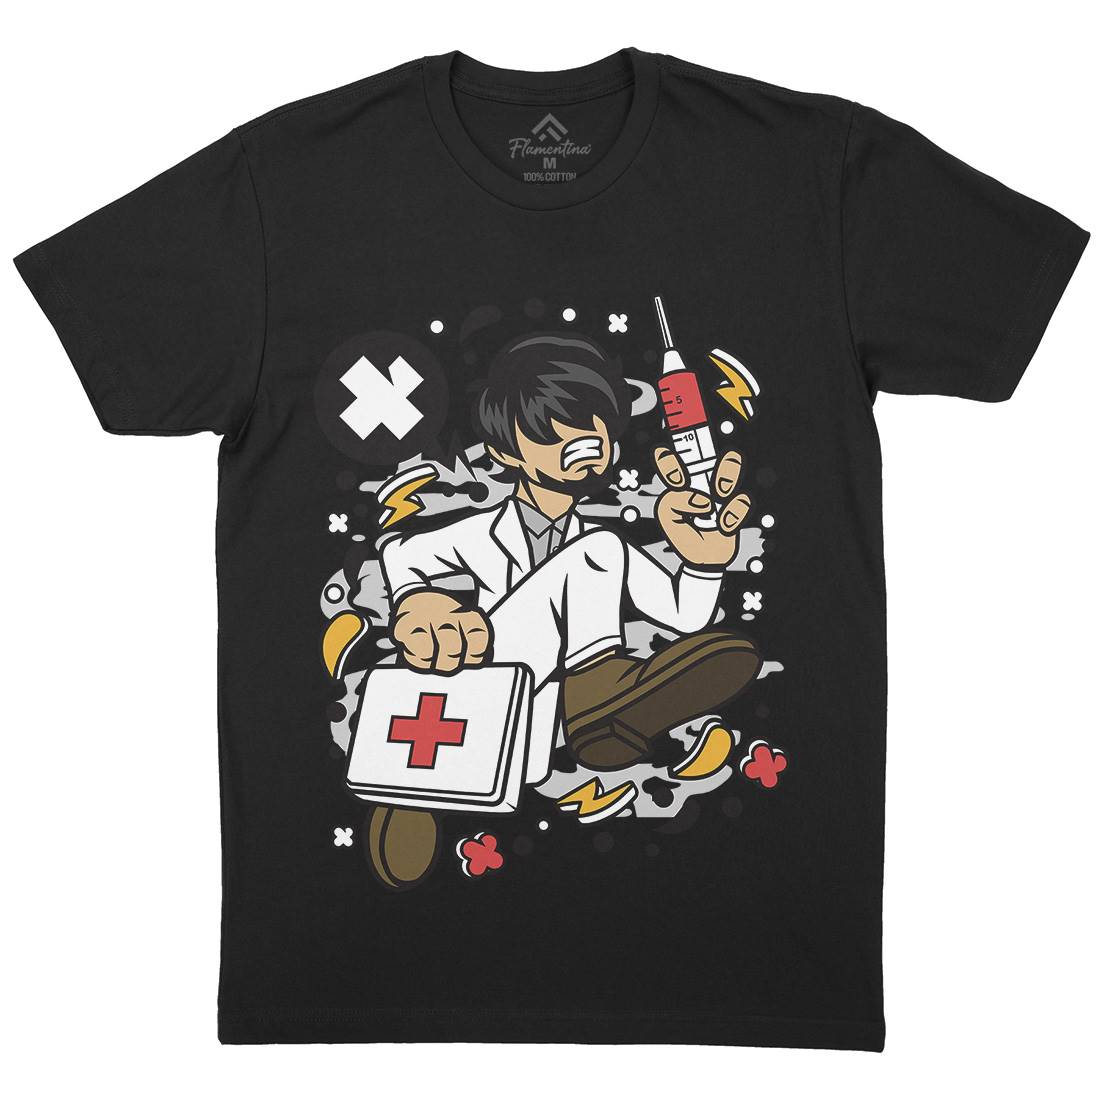 Doctor Running Mens Organic Crew Neck T-Shirt Work C539